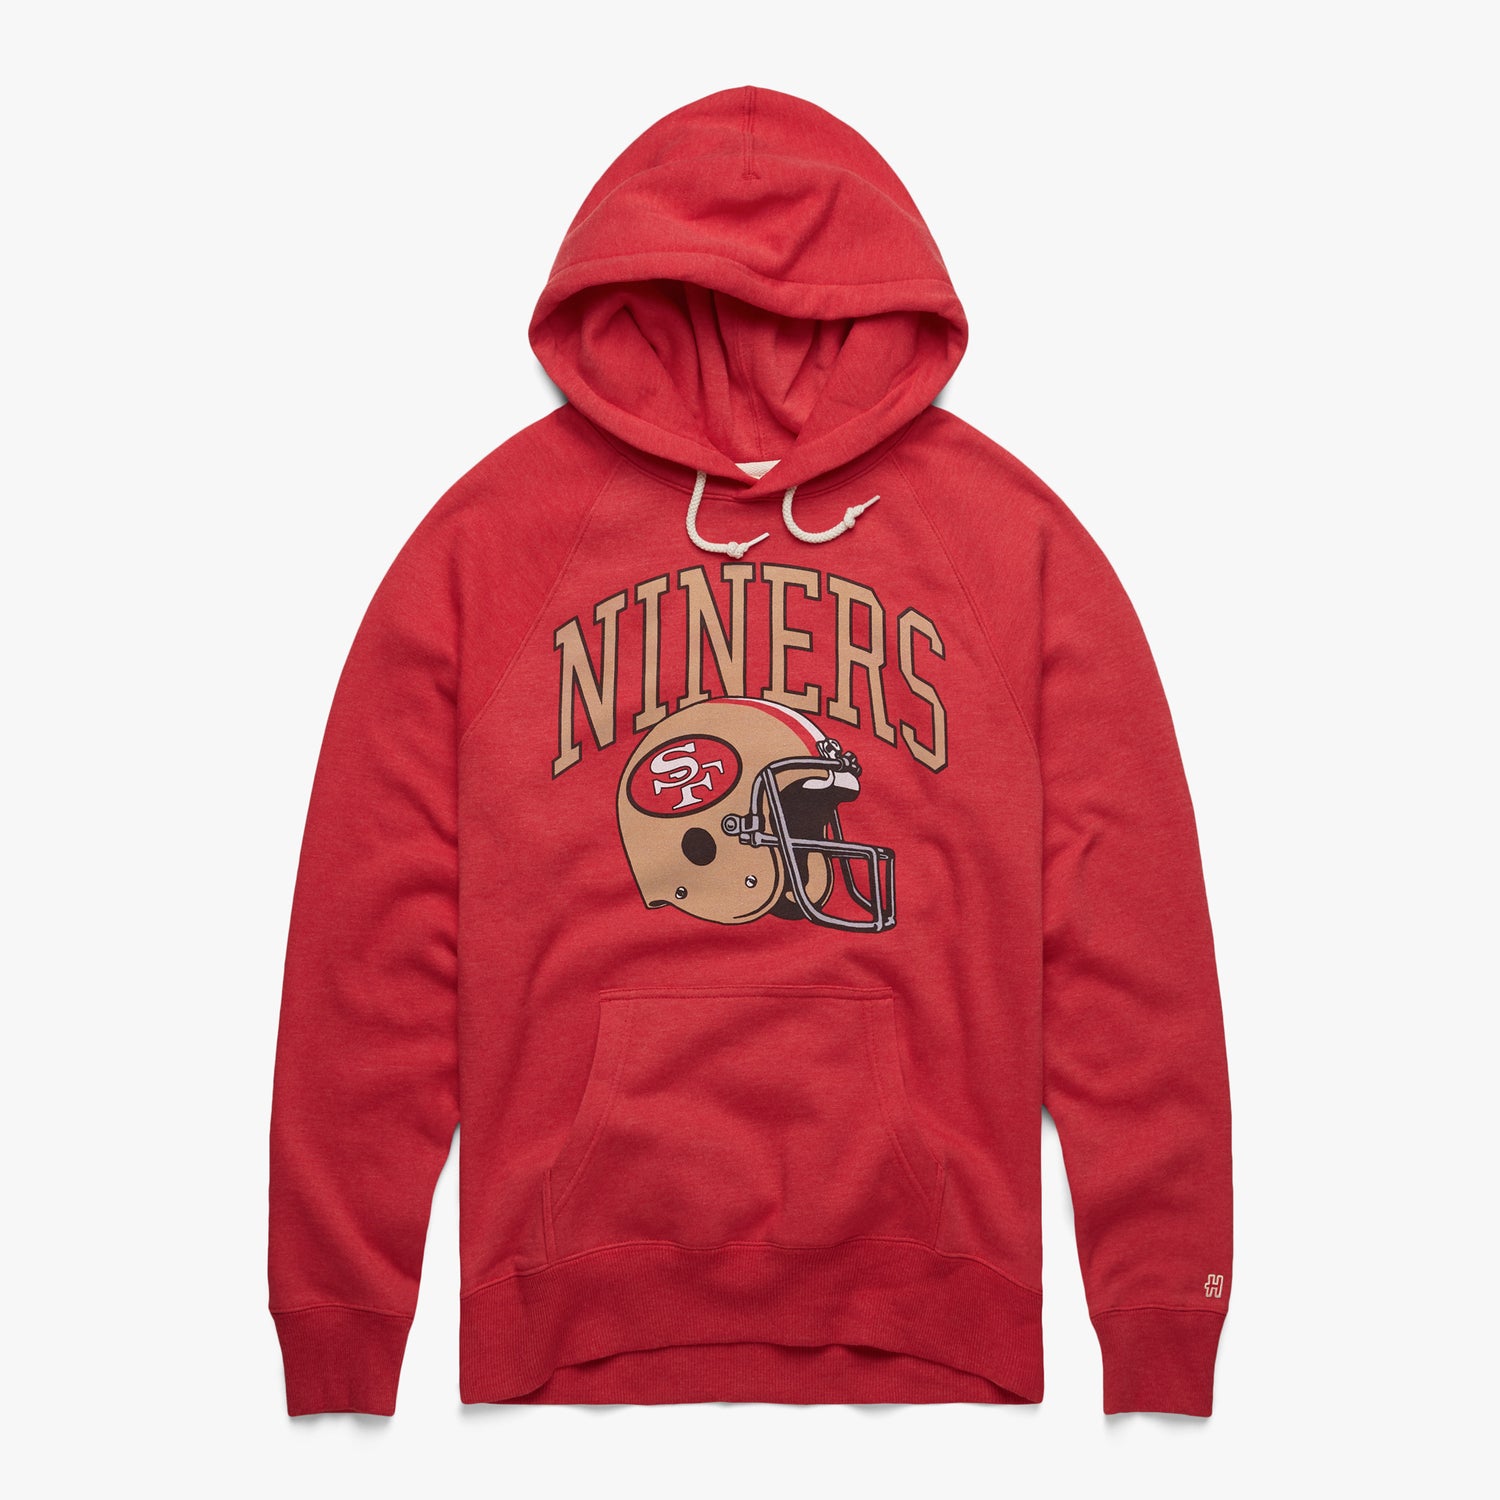 niners women's hoodie